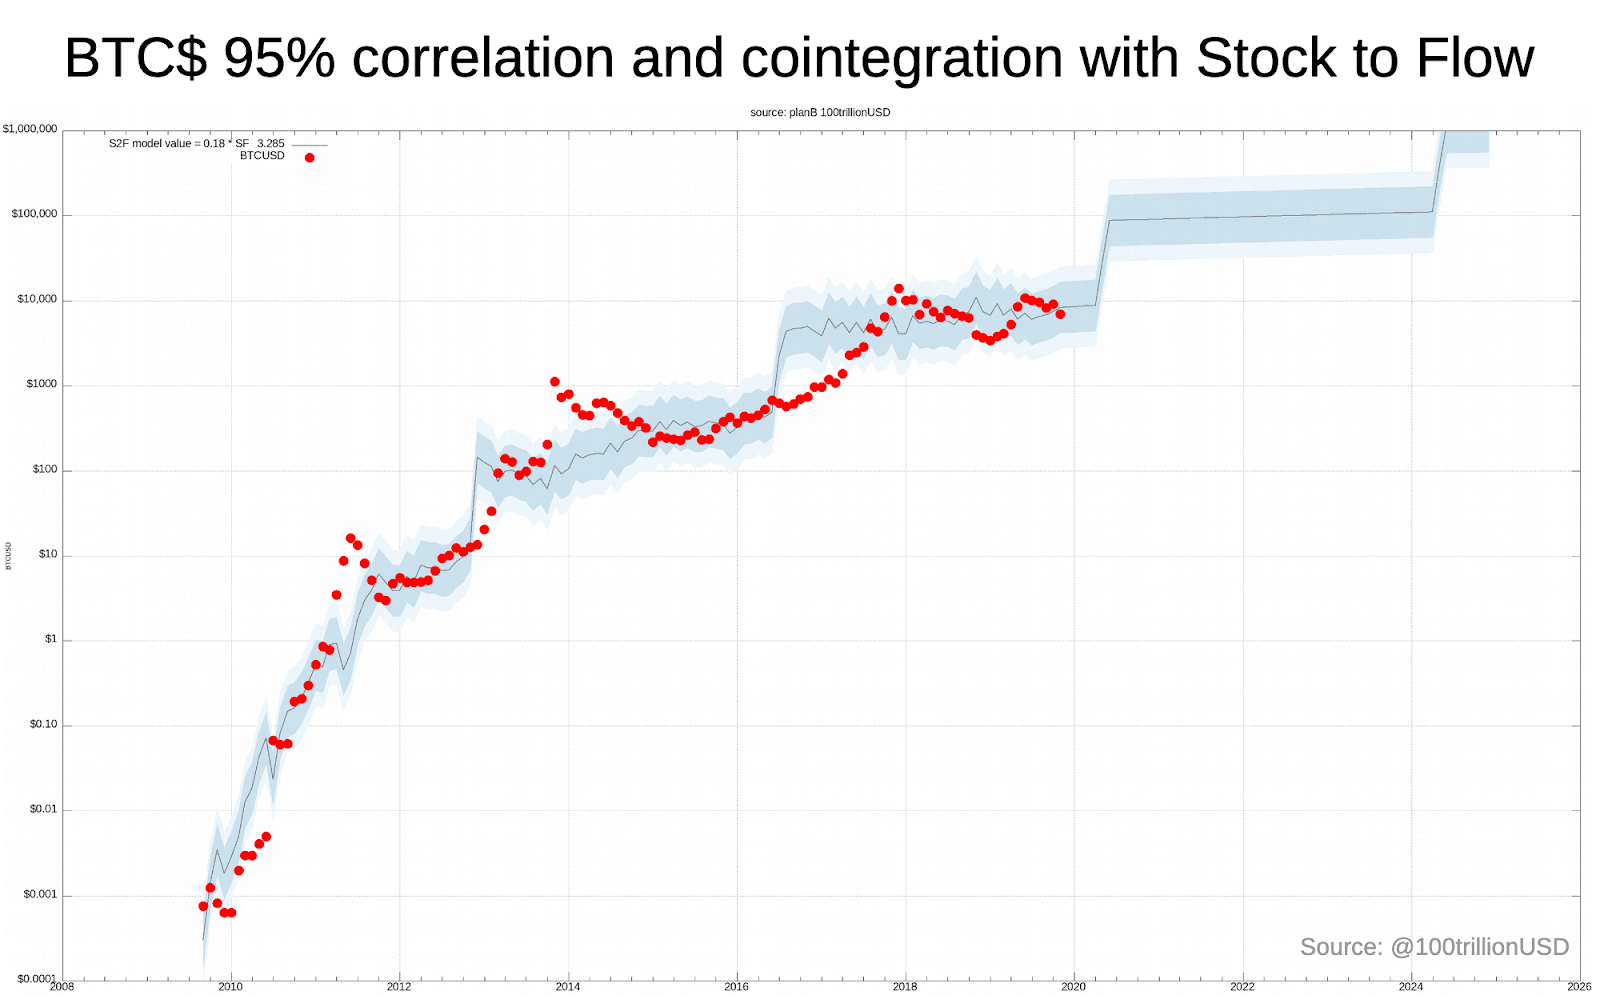 K线走势图显示了比特币与股票-流量模型的相关性和协整性